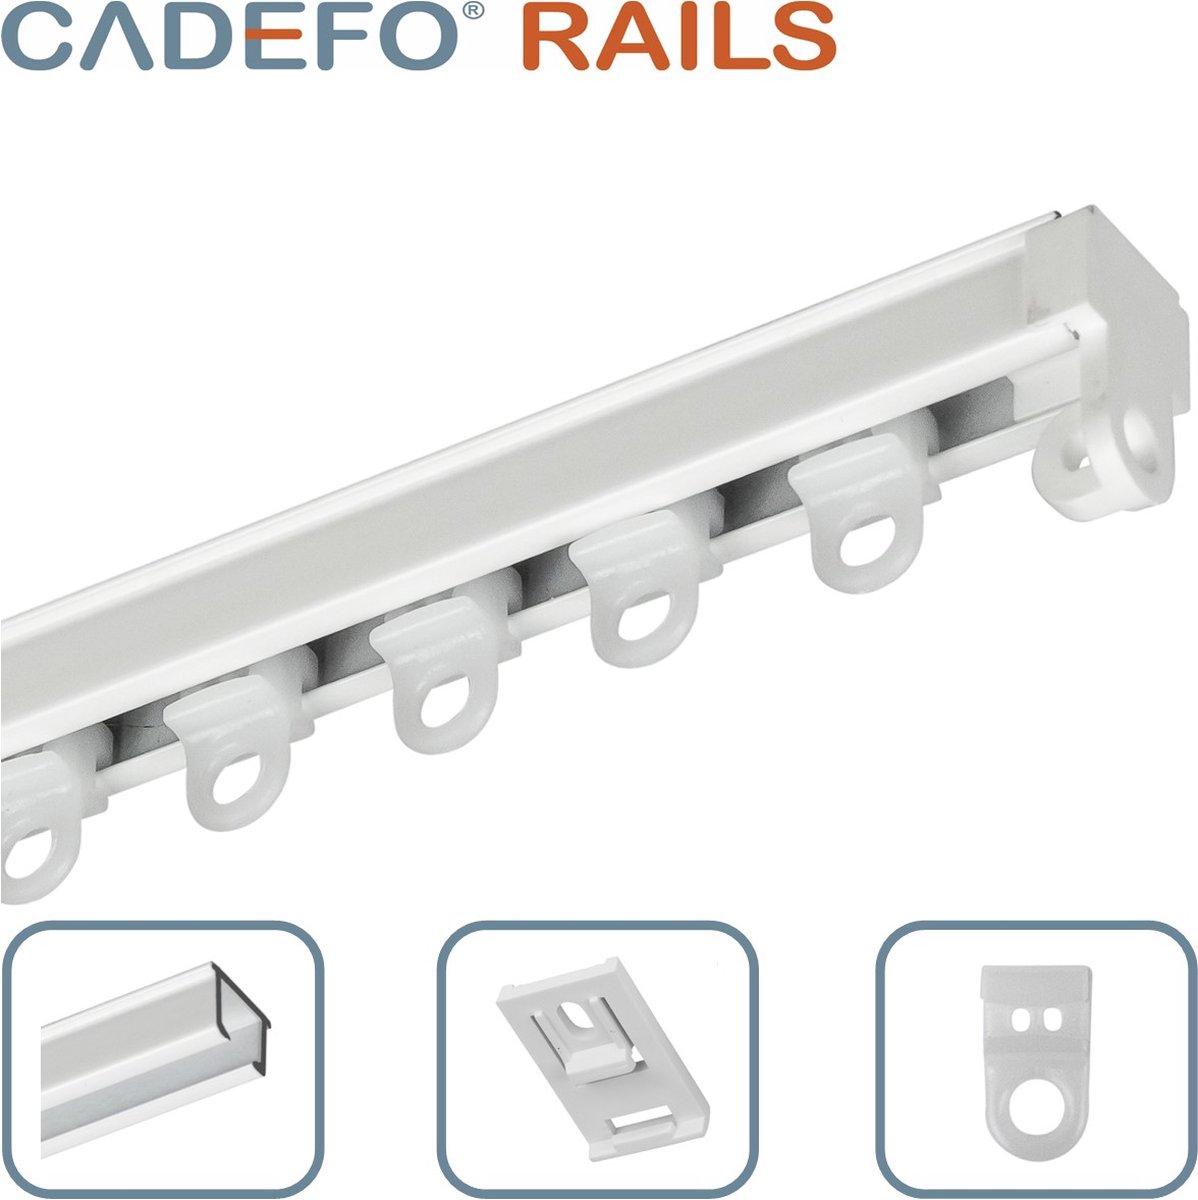 CADEFO RAILS (251 - 300 cm) Gordijnrails - Compleet op maat! - UIT 1 STUK - Leverbaar tot 6 meter - Plafondbevestiging - Lengte 272 cm